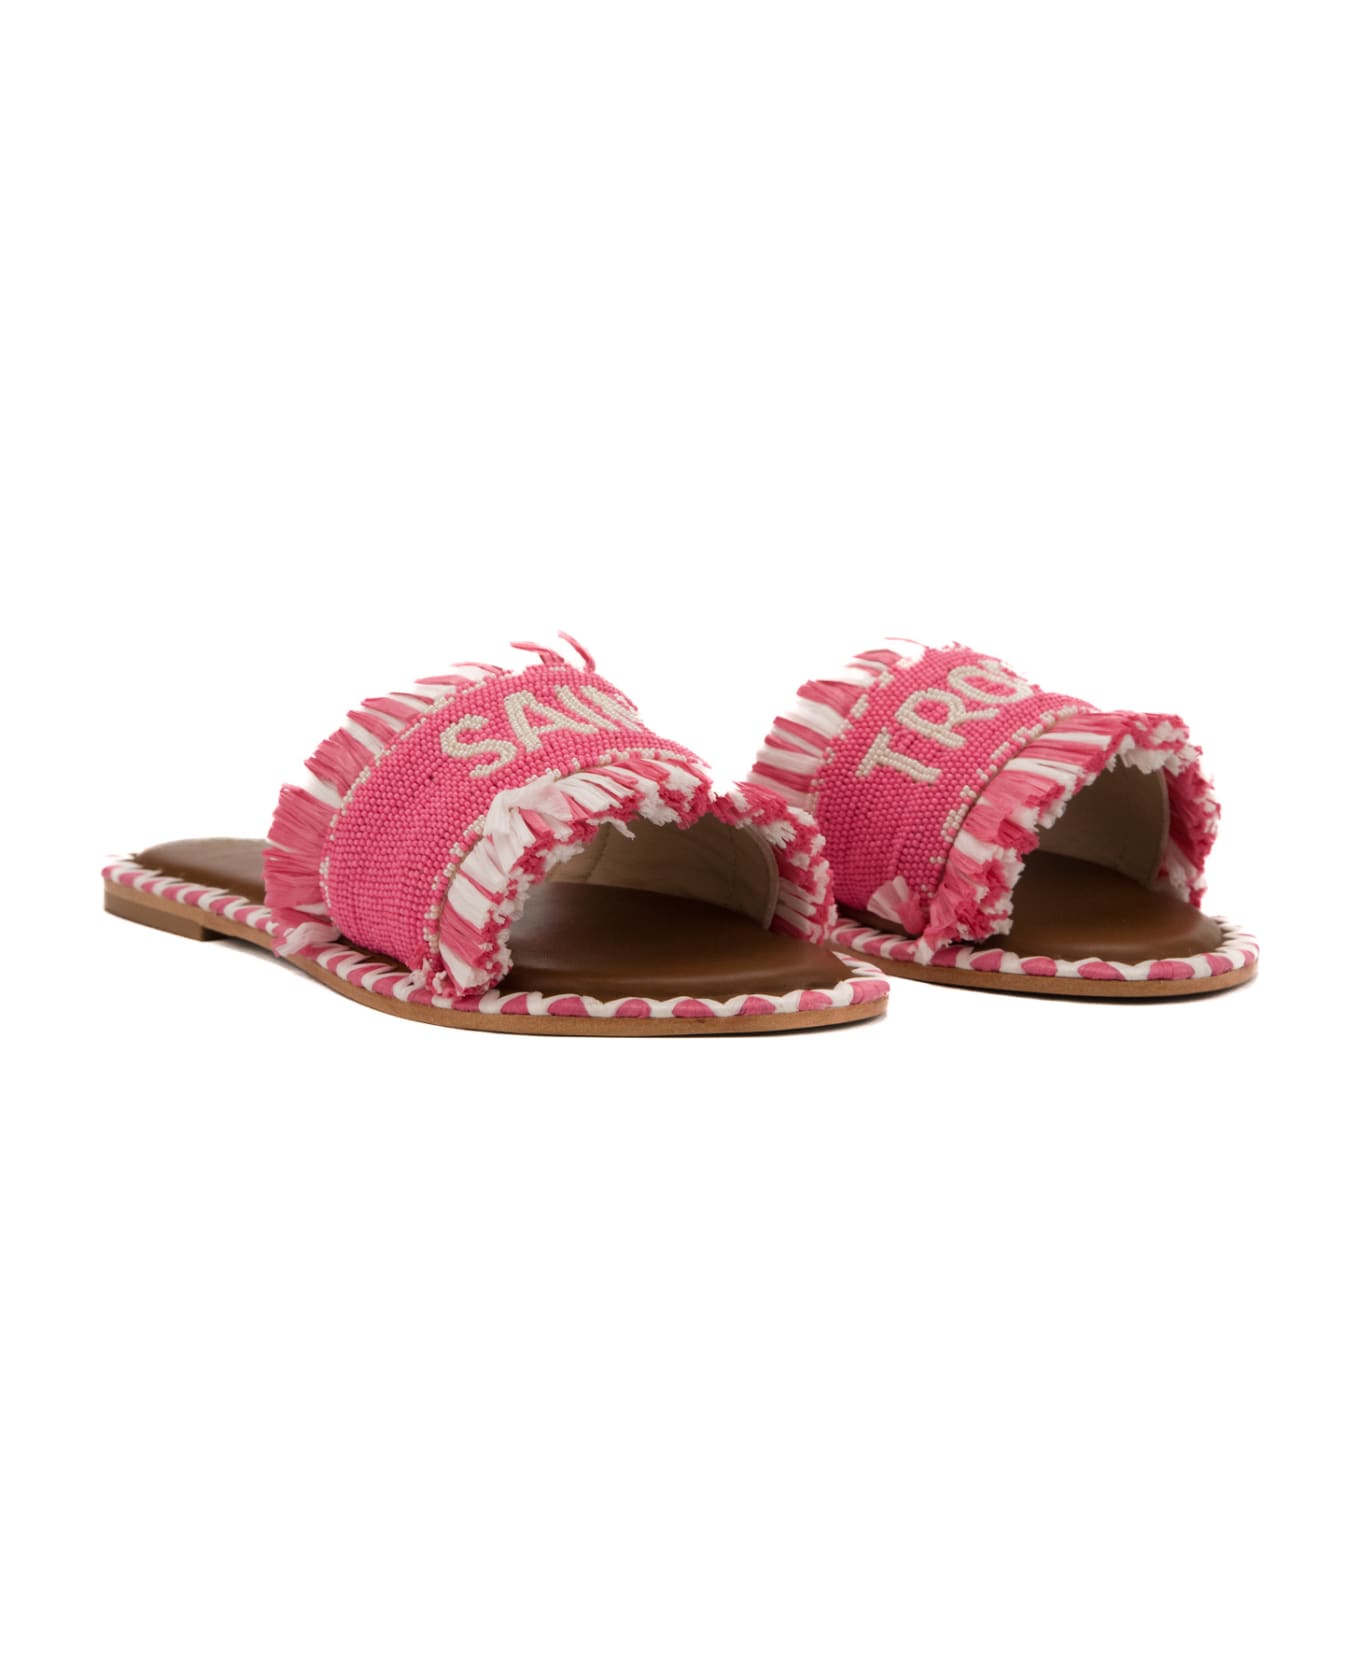 De Siena Saint Tropez Pink Sandals - Pink